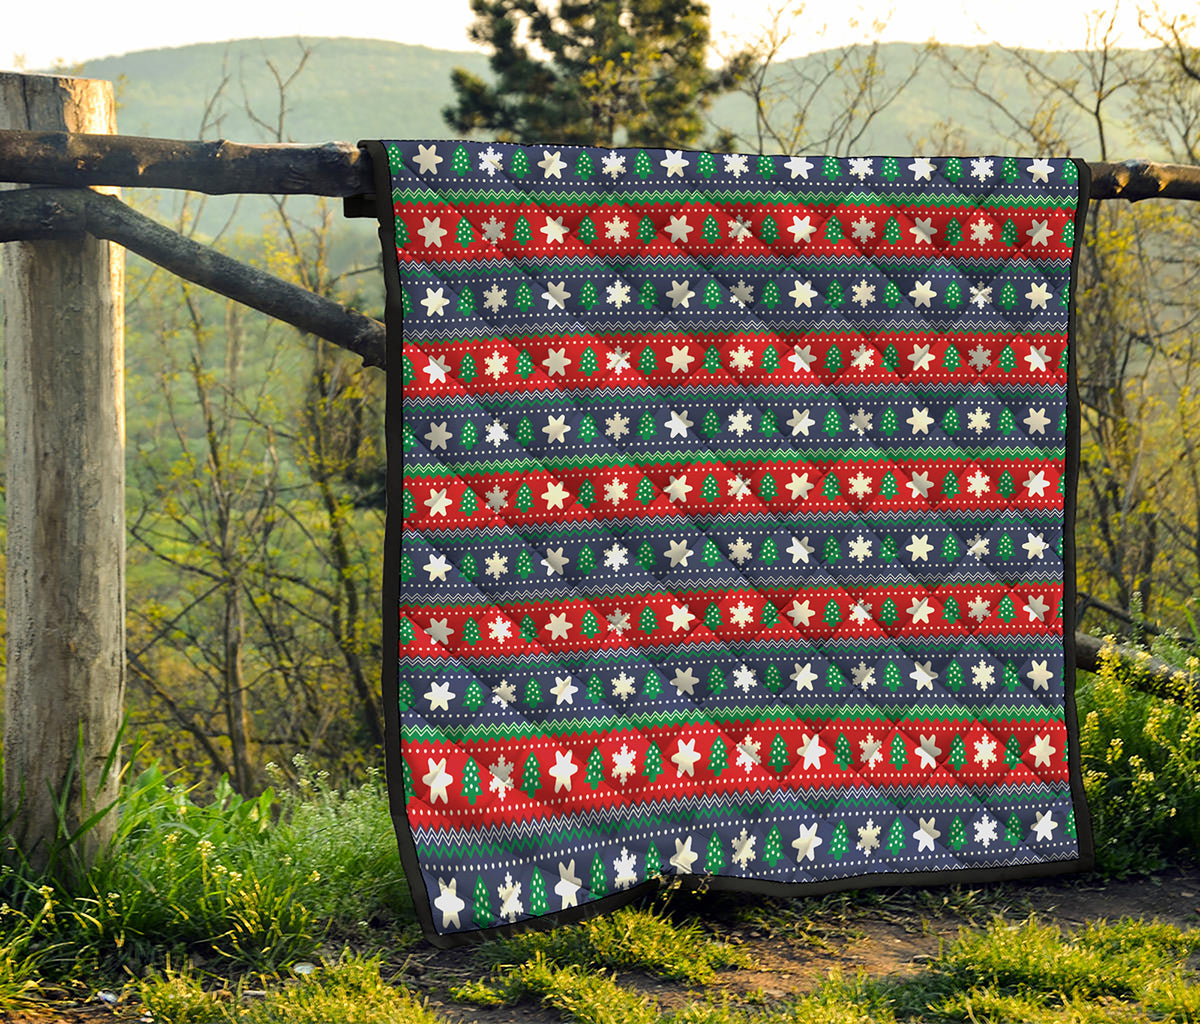 Scandinavian Christmas Pattern Print Quilt